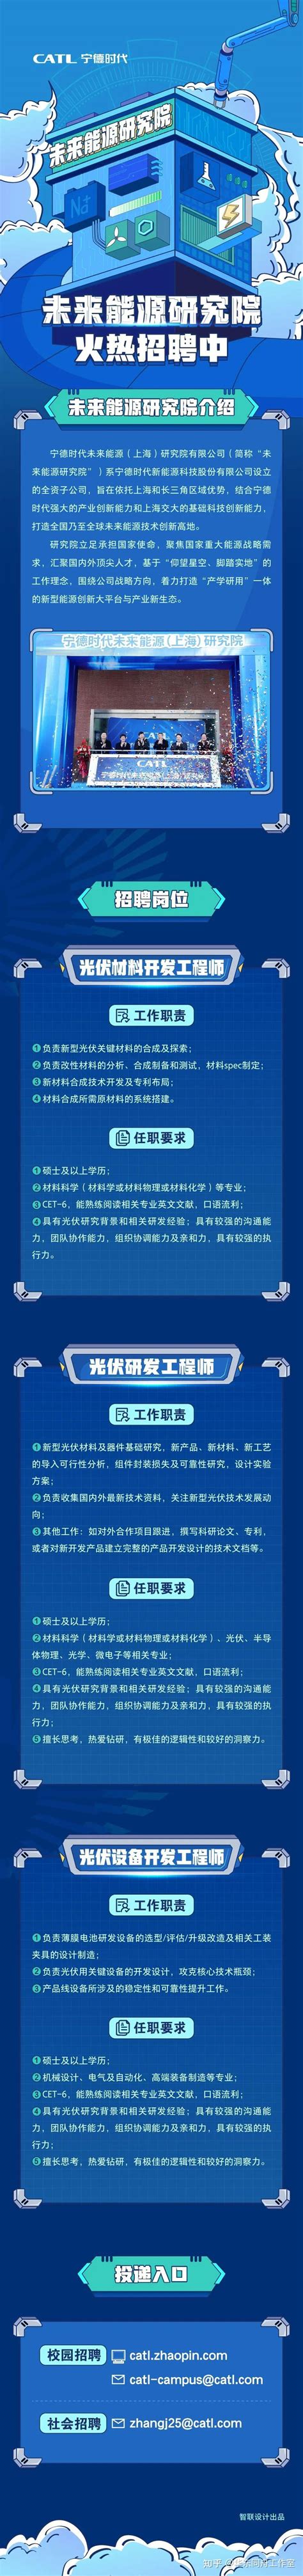 【招聘信息】宁德时代CATL 2019届校园招聘正式启动-搜狐大视野-搜狐新闻